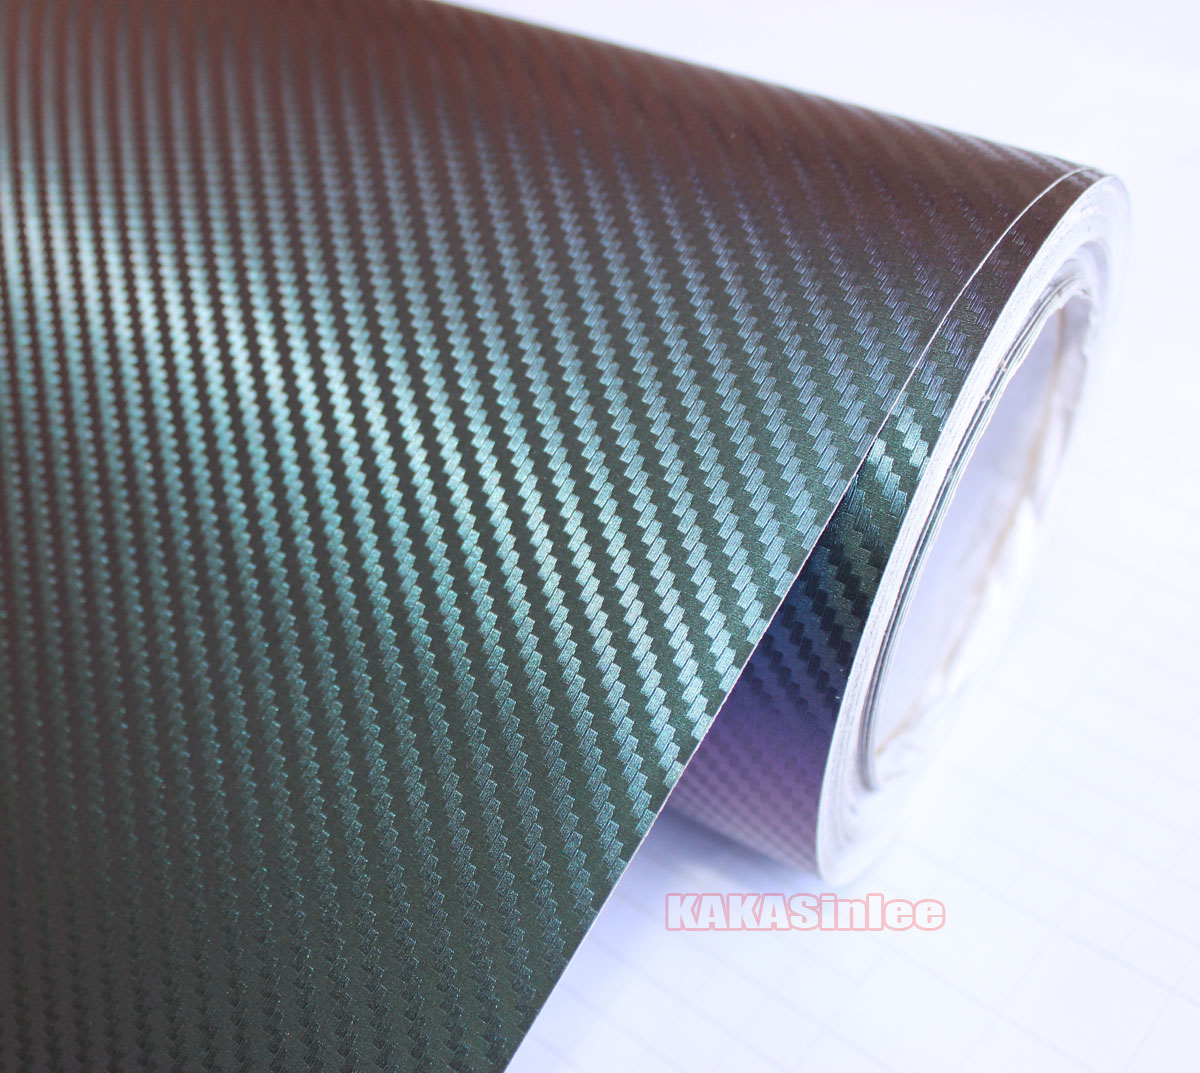 Premium Chameleon 3D Carbon Fiber Vinyl Wrap Film Sticker Chameleon Car  Foil Wrap Decal with Air Release Bubbles Free